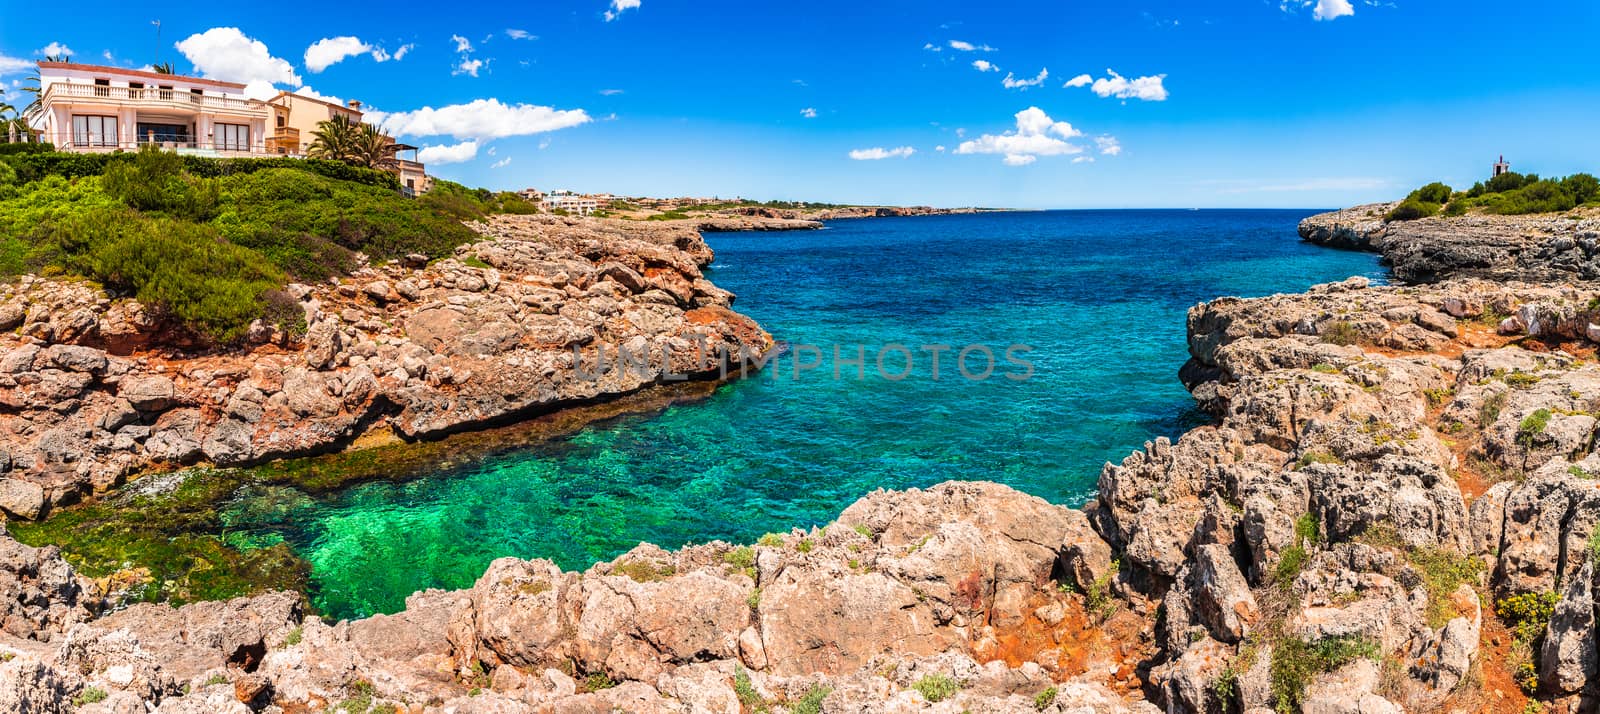 Beautiful coastline of Porto Cristo on Mallorca island, Mediterranean Sea Spain